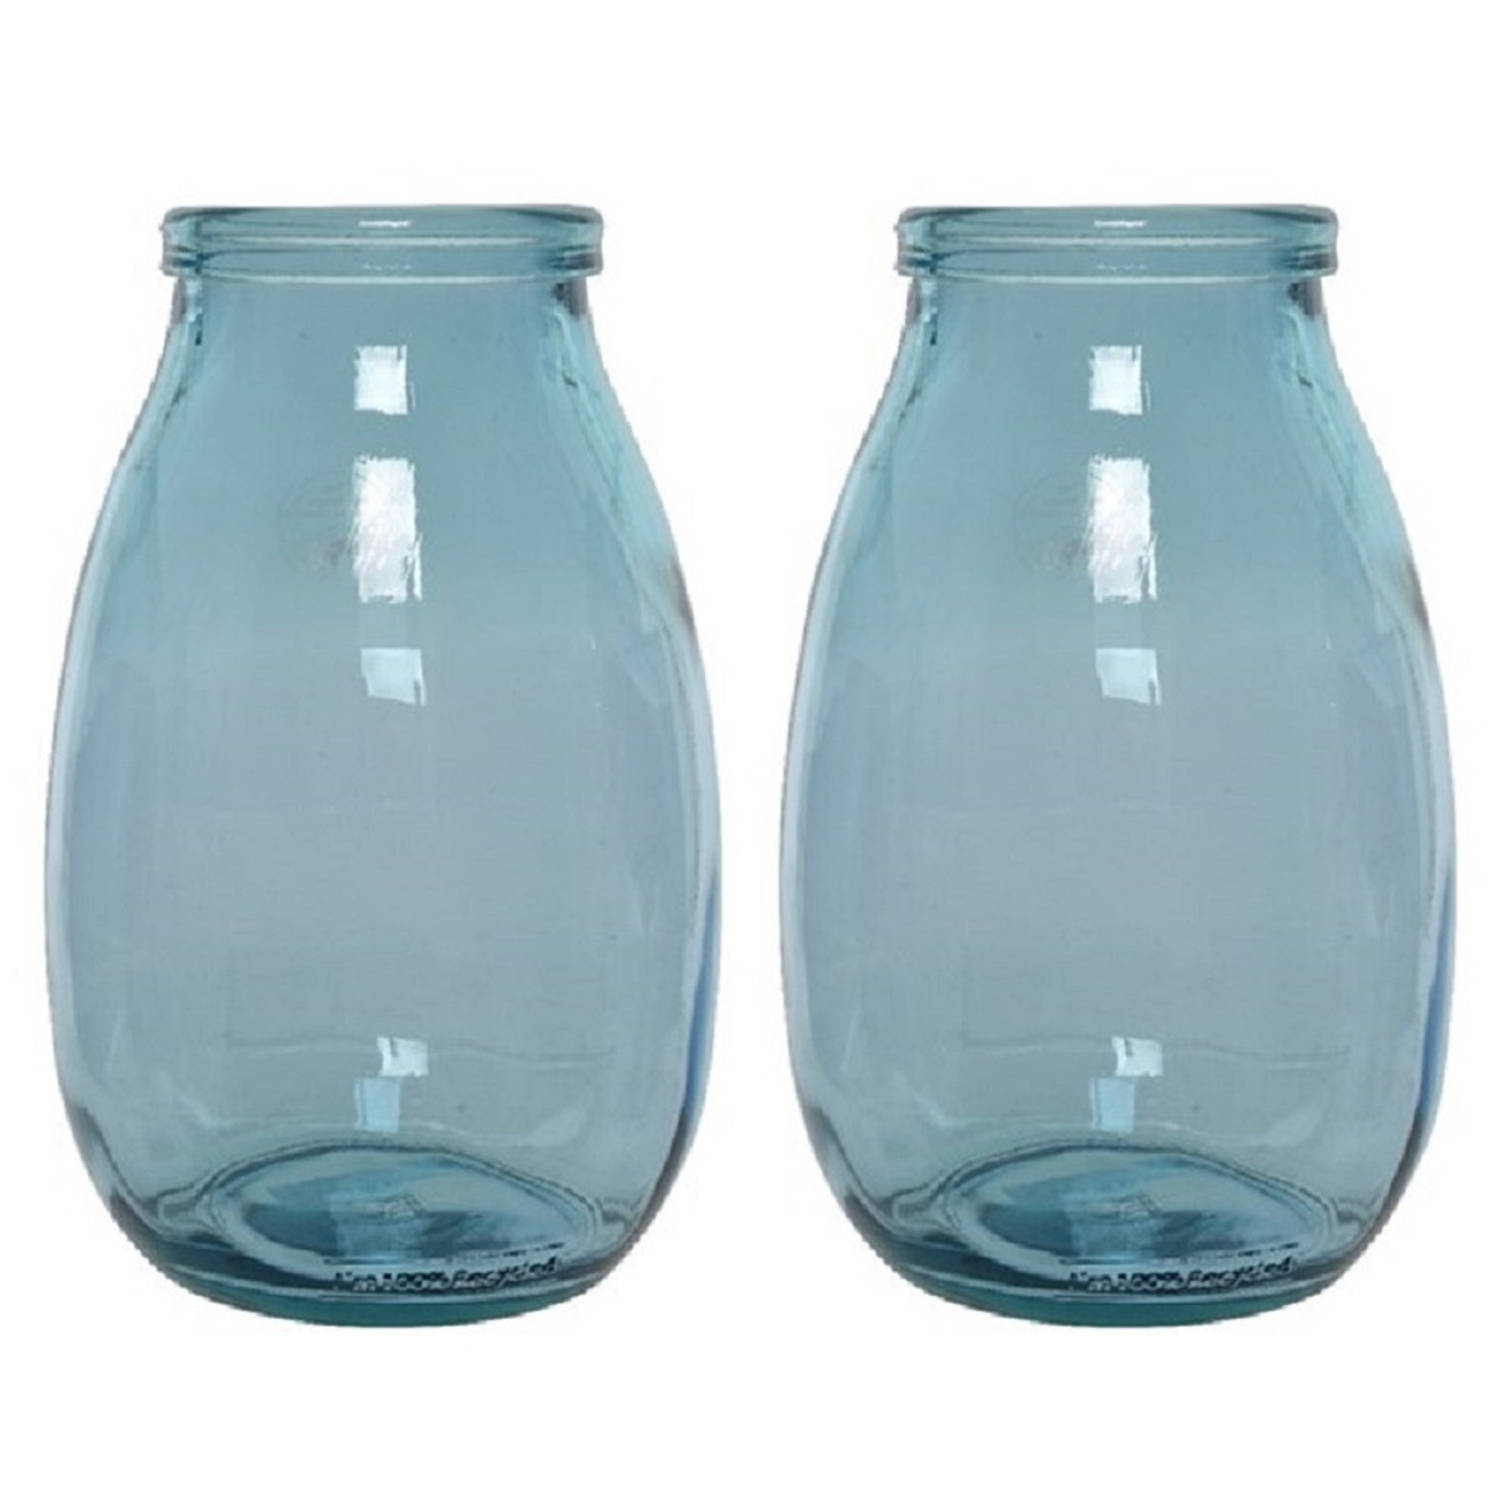 2x Stuks Blauwe Vazen-bloemenvazen Van Gerecycled Glas 18 X 28 Cm Vazen